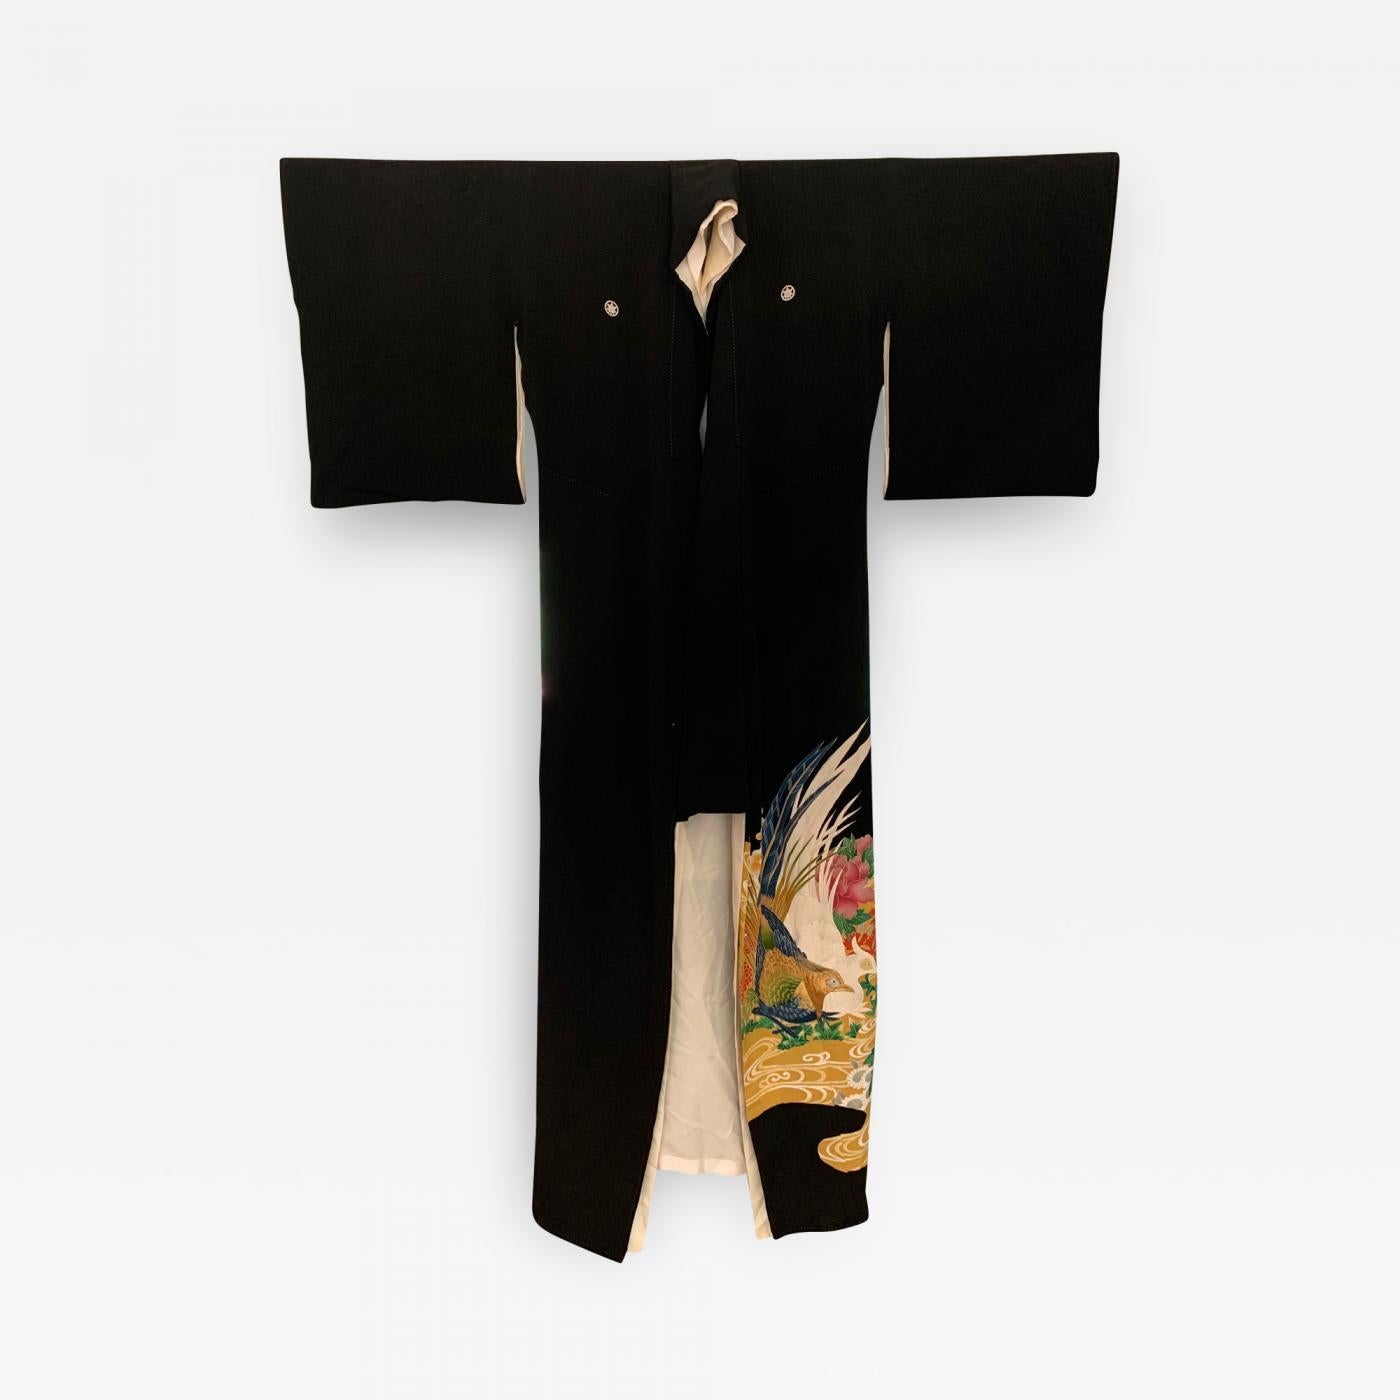 Kimono japonais vintage en soie Kuro Tomesode, circa 1960-1980. Le Kuro Tomesode est une robe destinée aux femmes mariées pour les occasions les plus formelles, l'équivalent des robes de soirée en Occident. Il est globalement noir, décoré uniquement